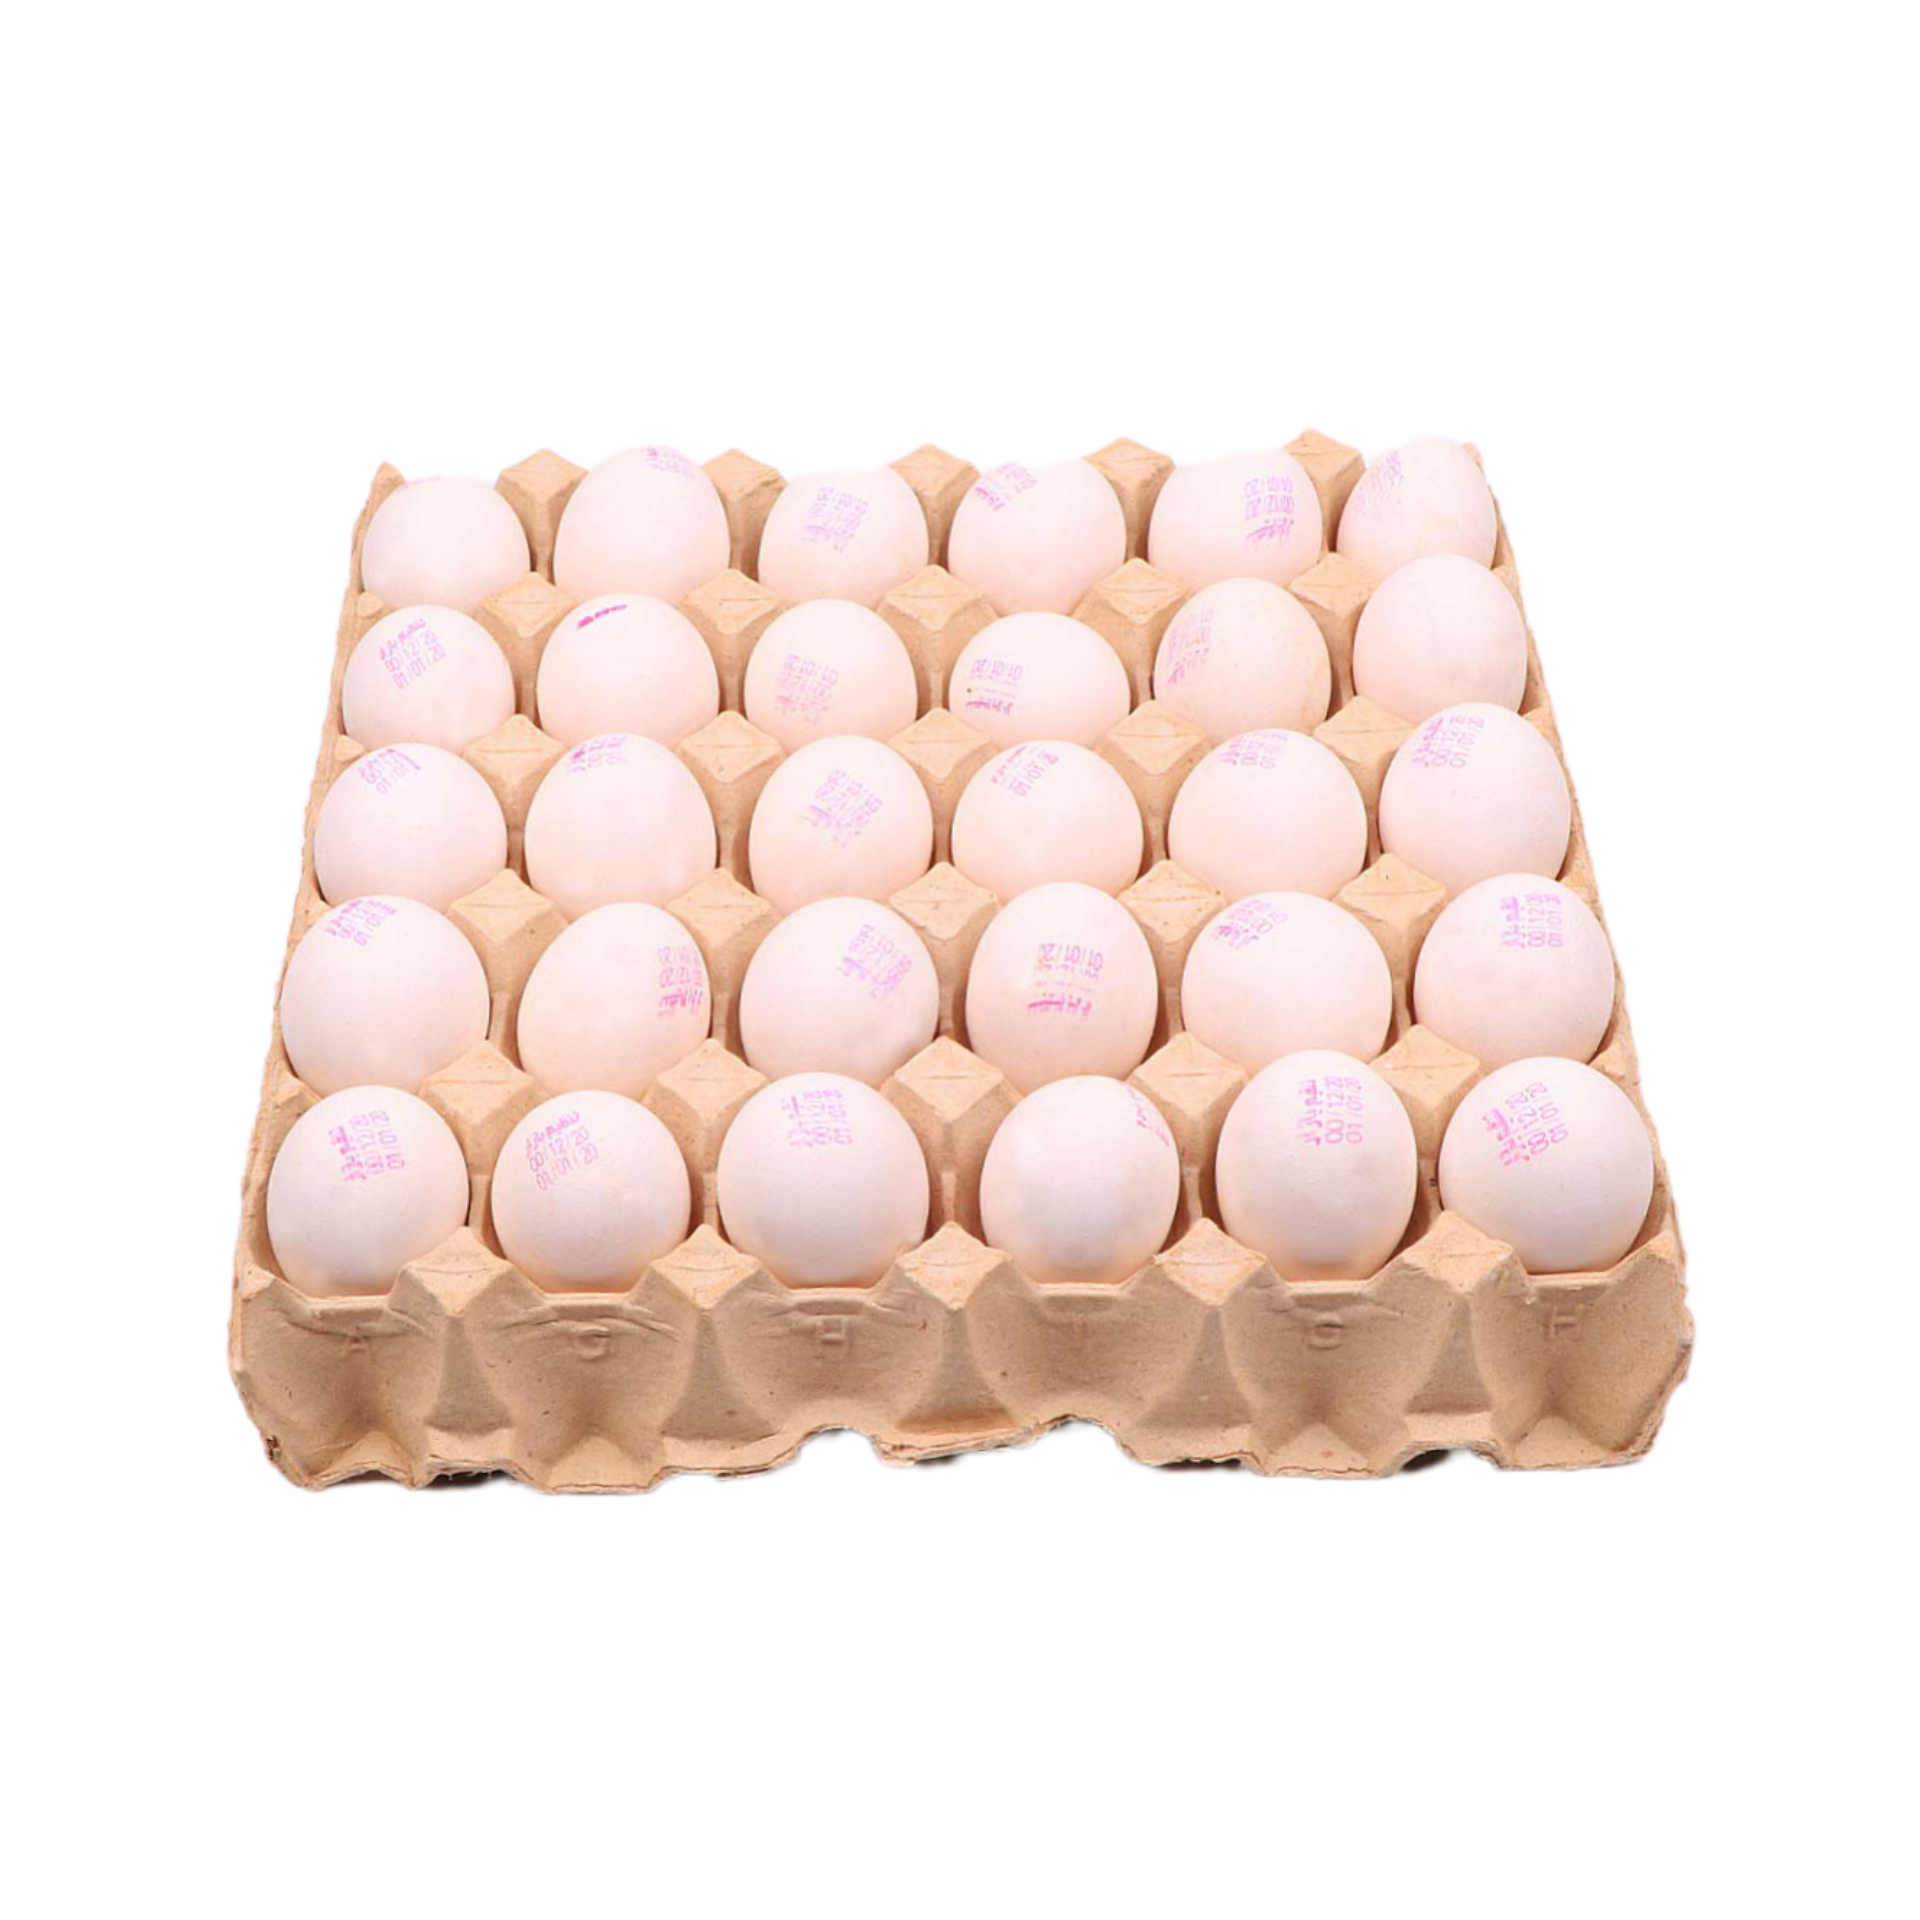 107 هزار تن تخم مرغ در آذر ماه تولید شد